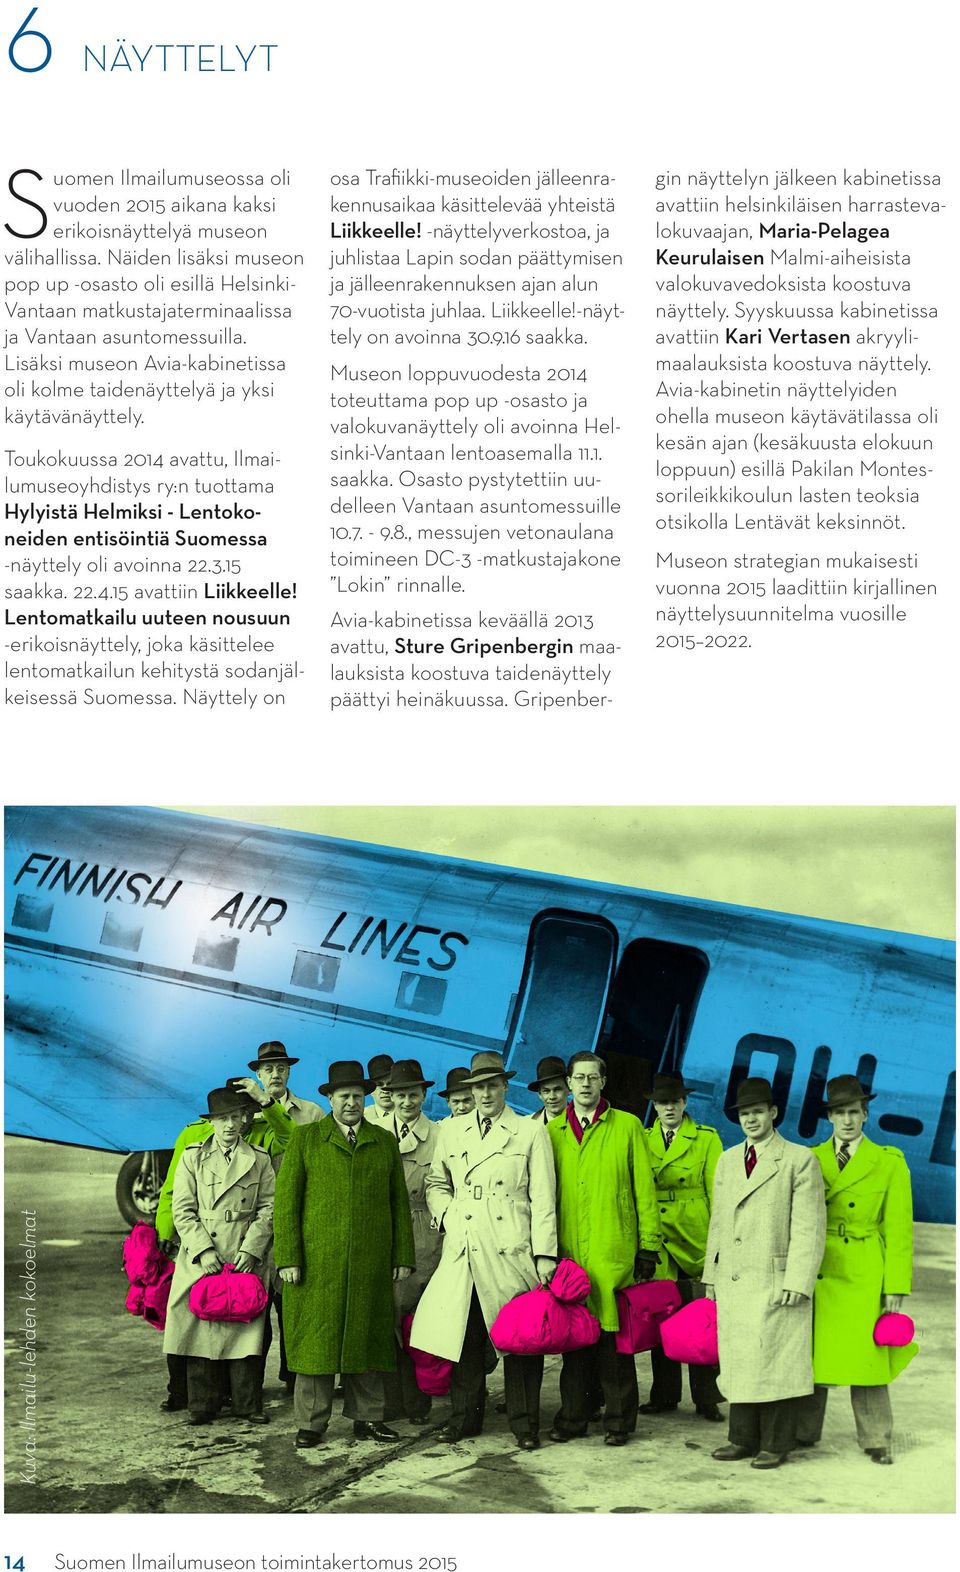 Toukokuussa 2014 avattu, Ilmailumuseoyhdistys ry:n tuottama Hylyistä Helmiksi - Lentokoneiden entisöintiä Suomessa -näyttely oli avoinna 22.3.15 saakka. 22.4.15 avattiin Liikkeelle!